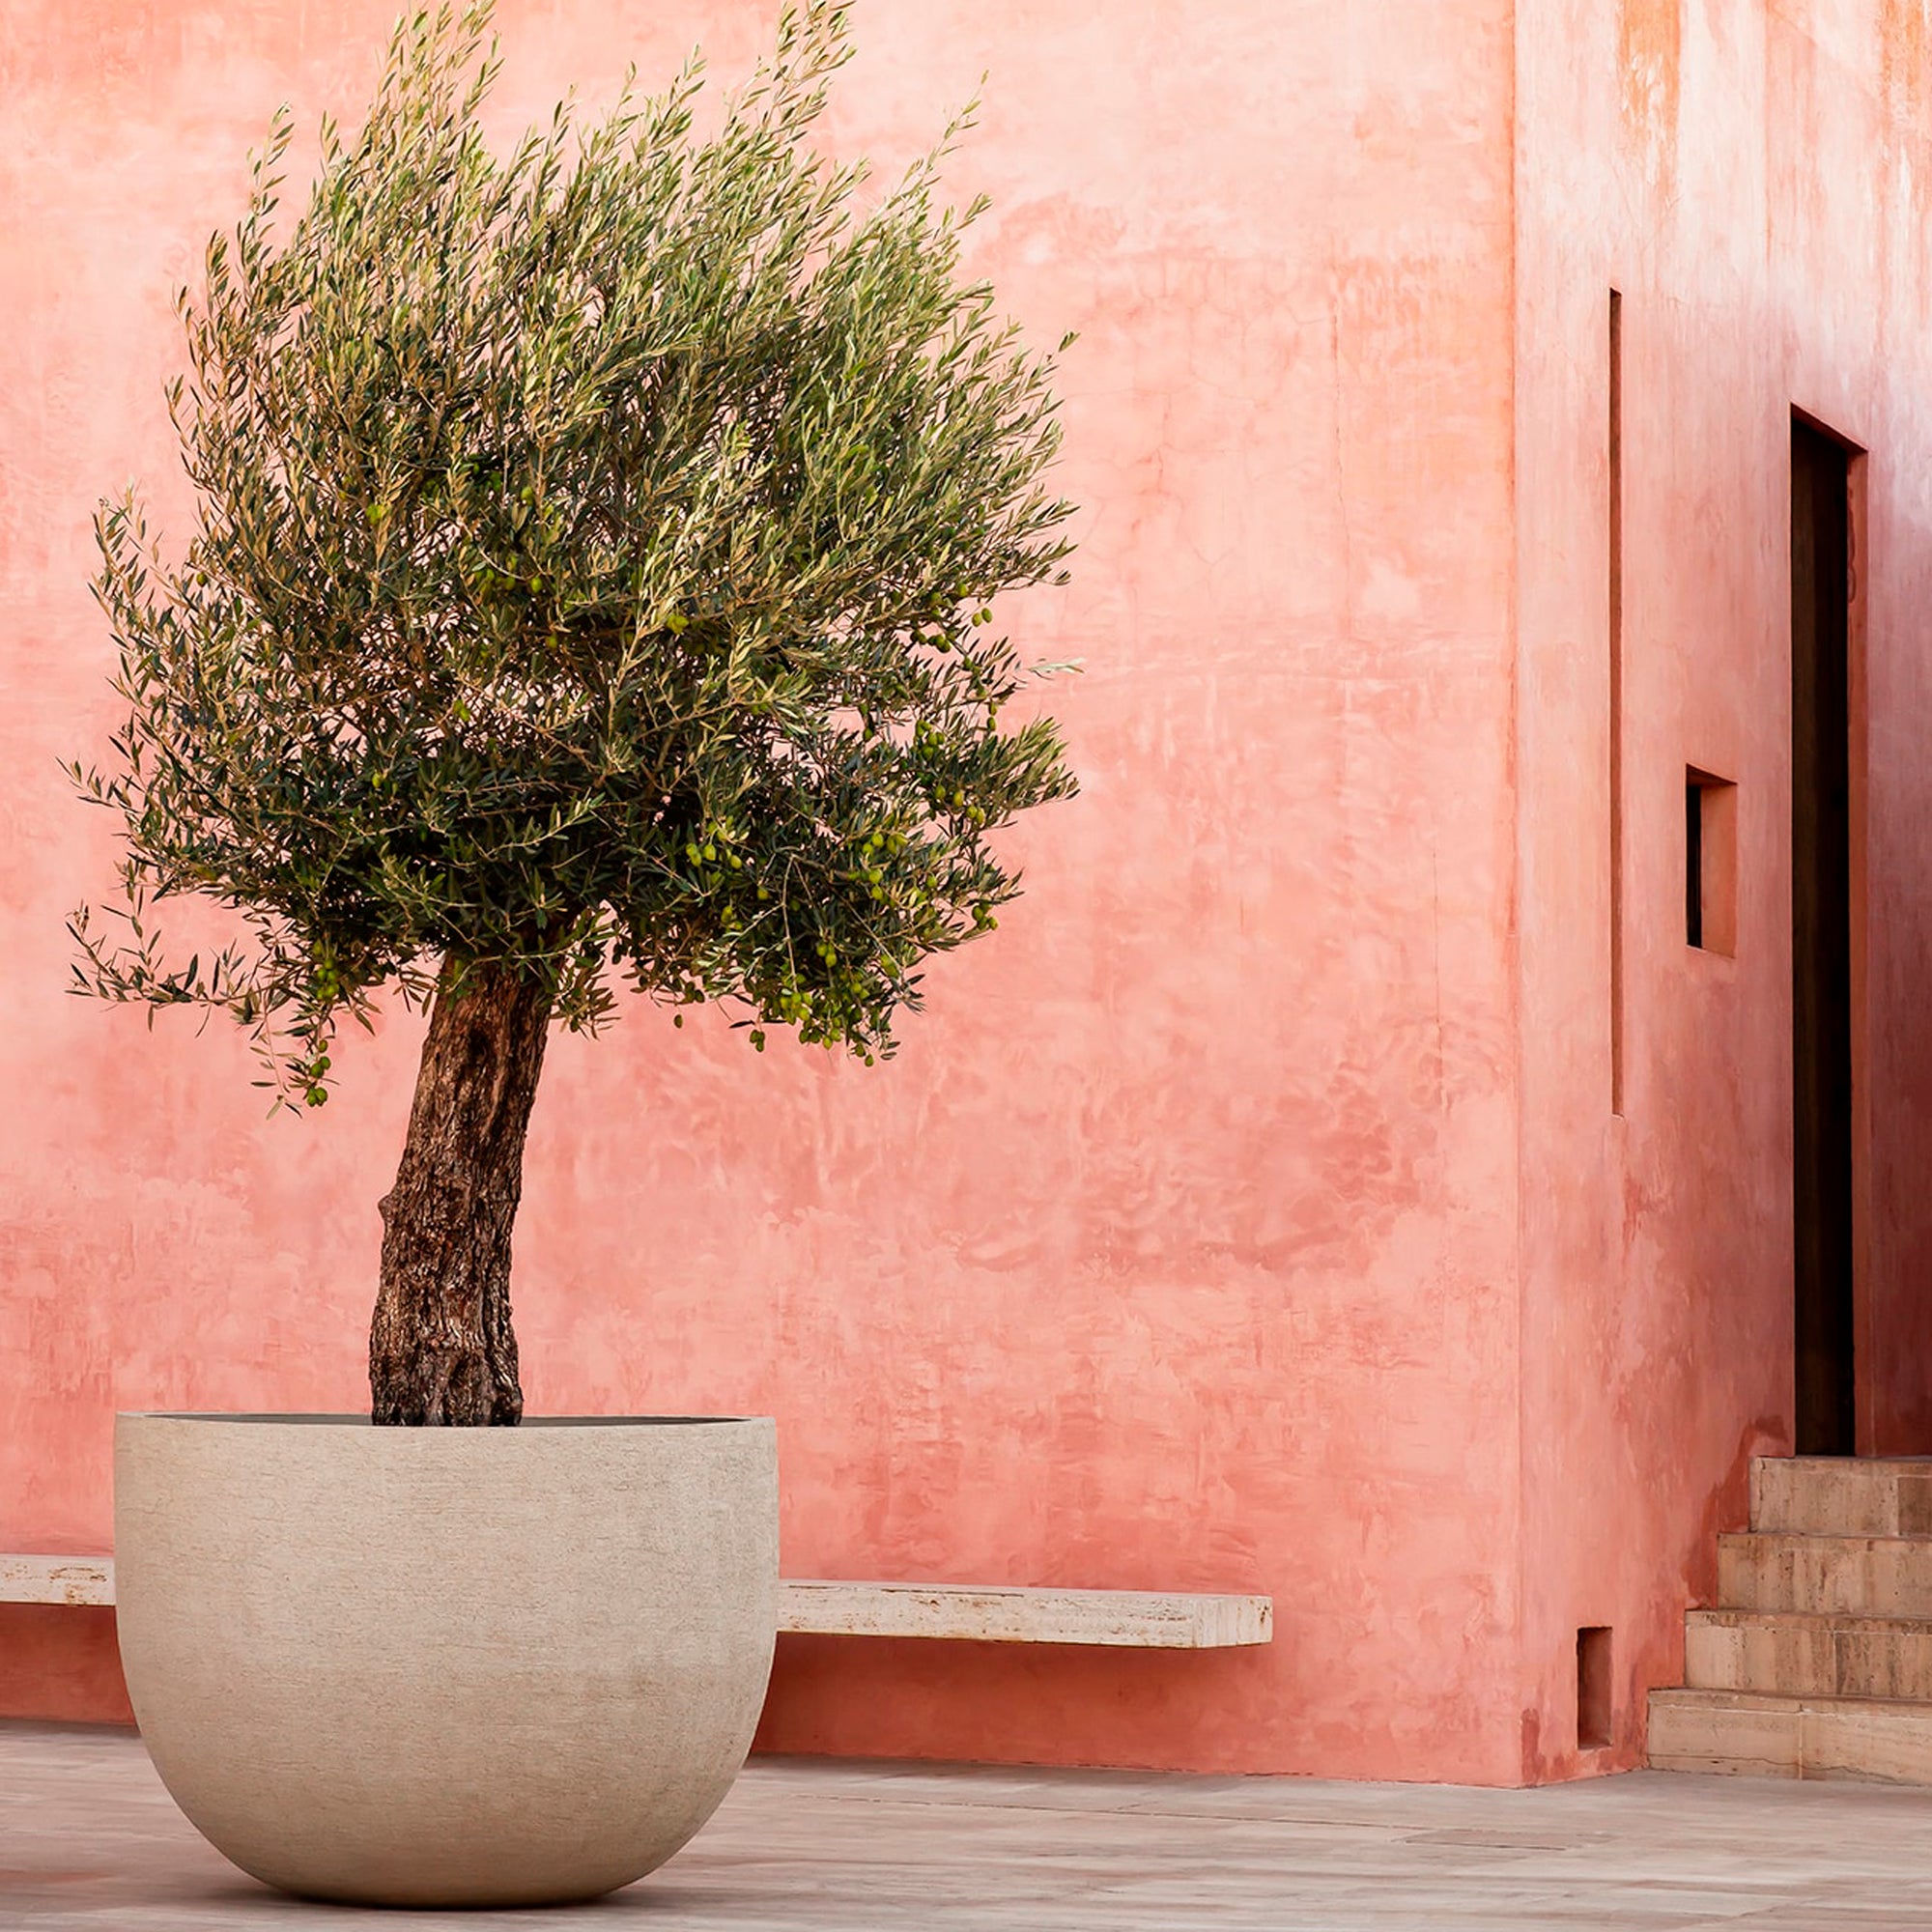 Ein sehr schöner Olivenbaum steht in Mallorca vor einer roten Villa in einem weißen Domani Texel Blumengefäß.